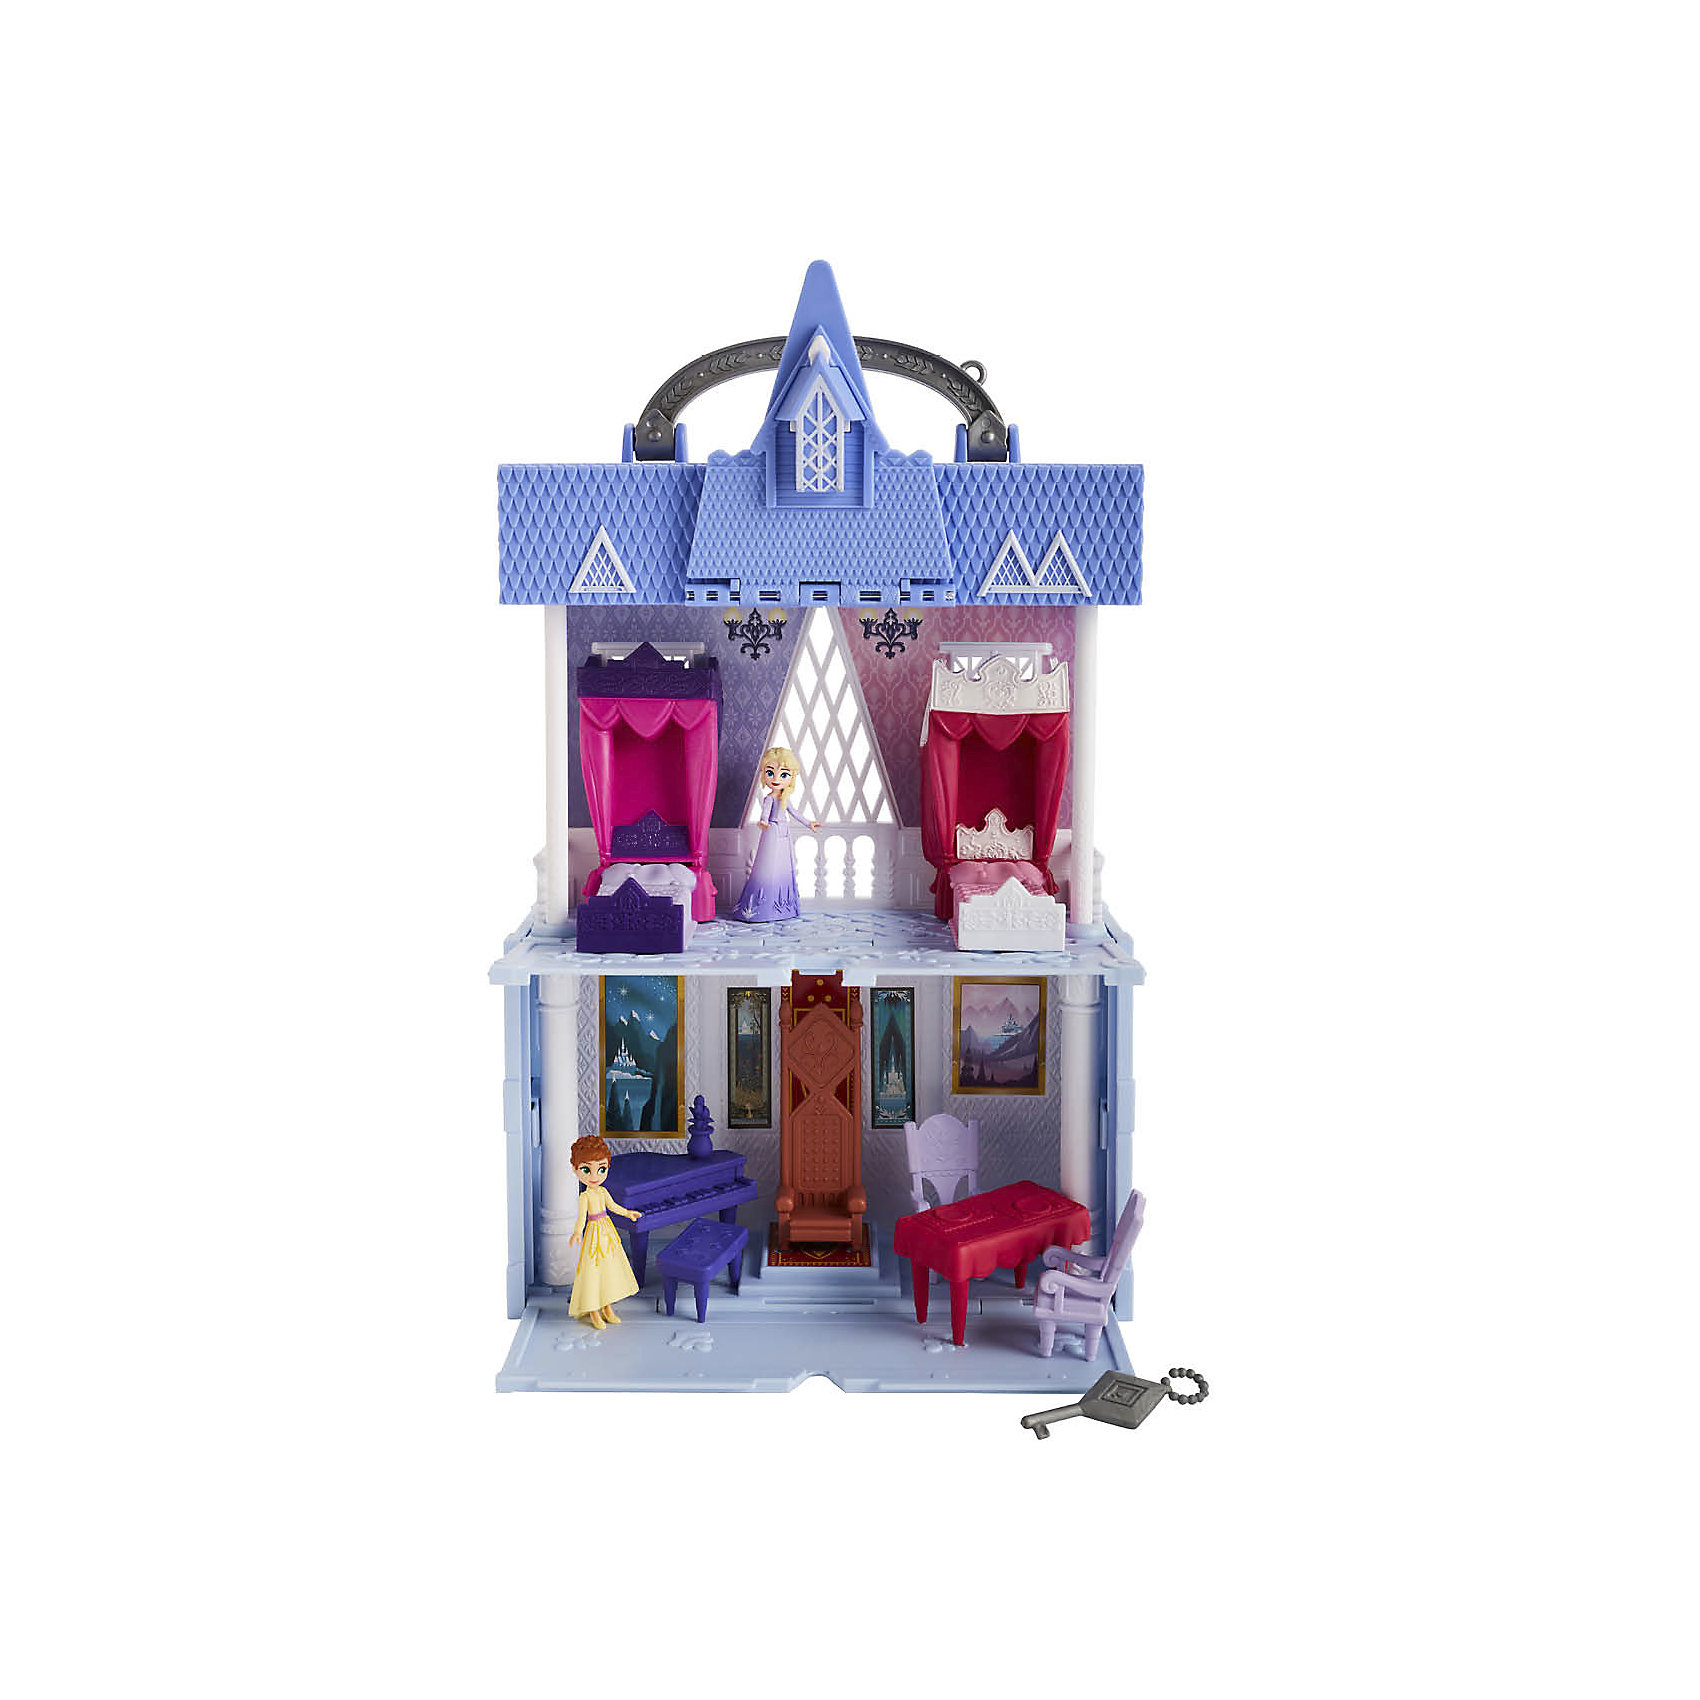 Игровой набор Disney Princess "Холодное сердце" Замок в шкатулке Hasbro 12267552